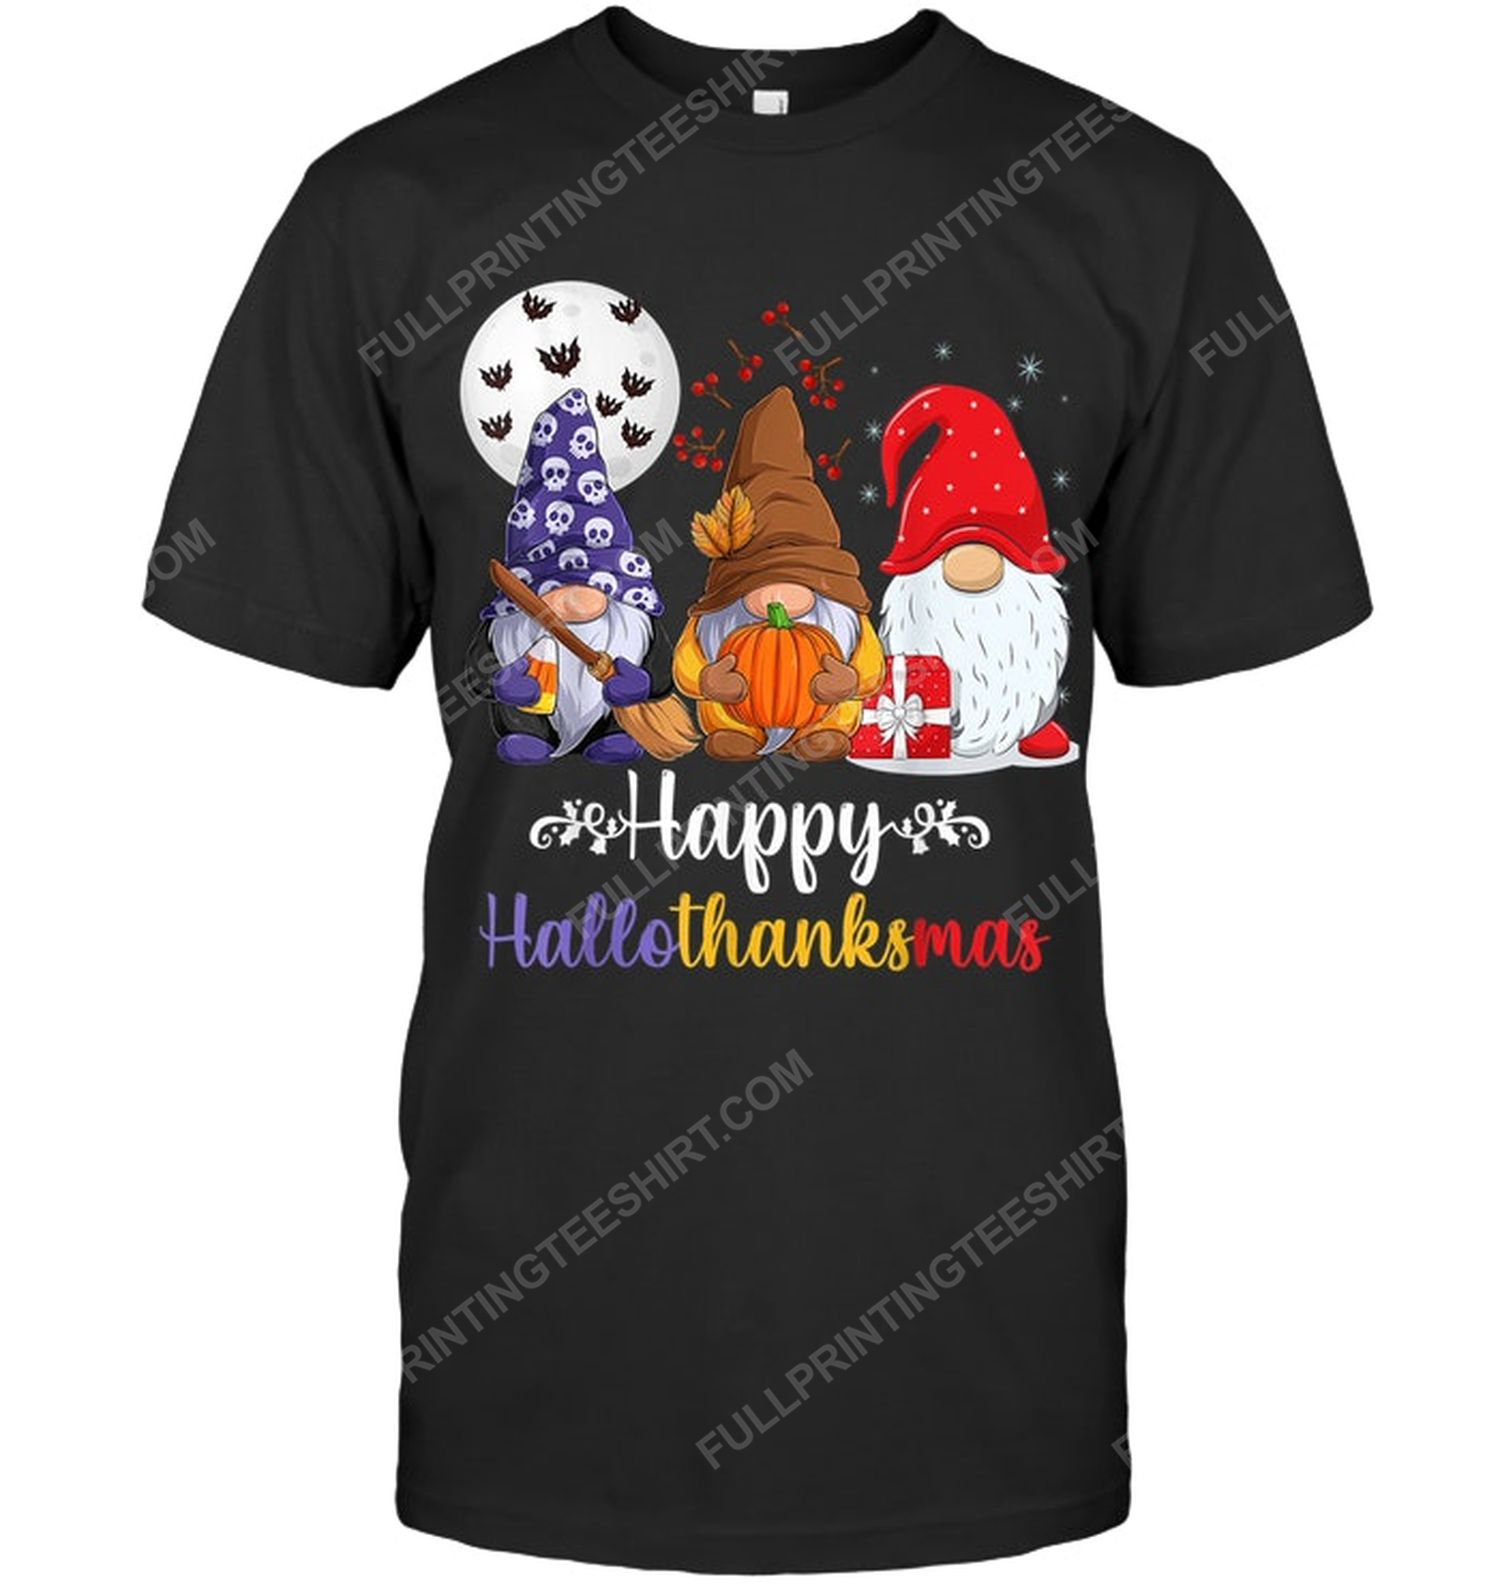 Christmas time happy hallothanksmas gnomes tshirt